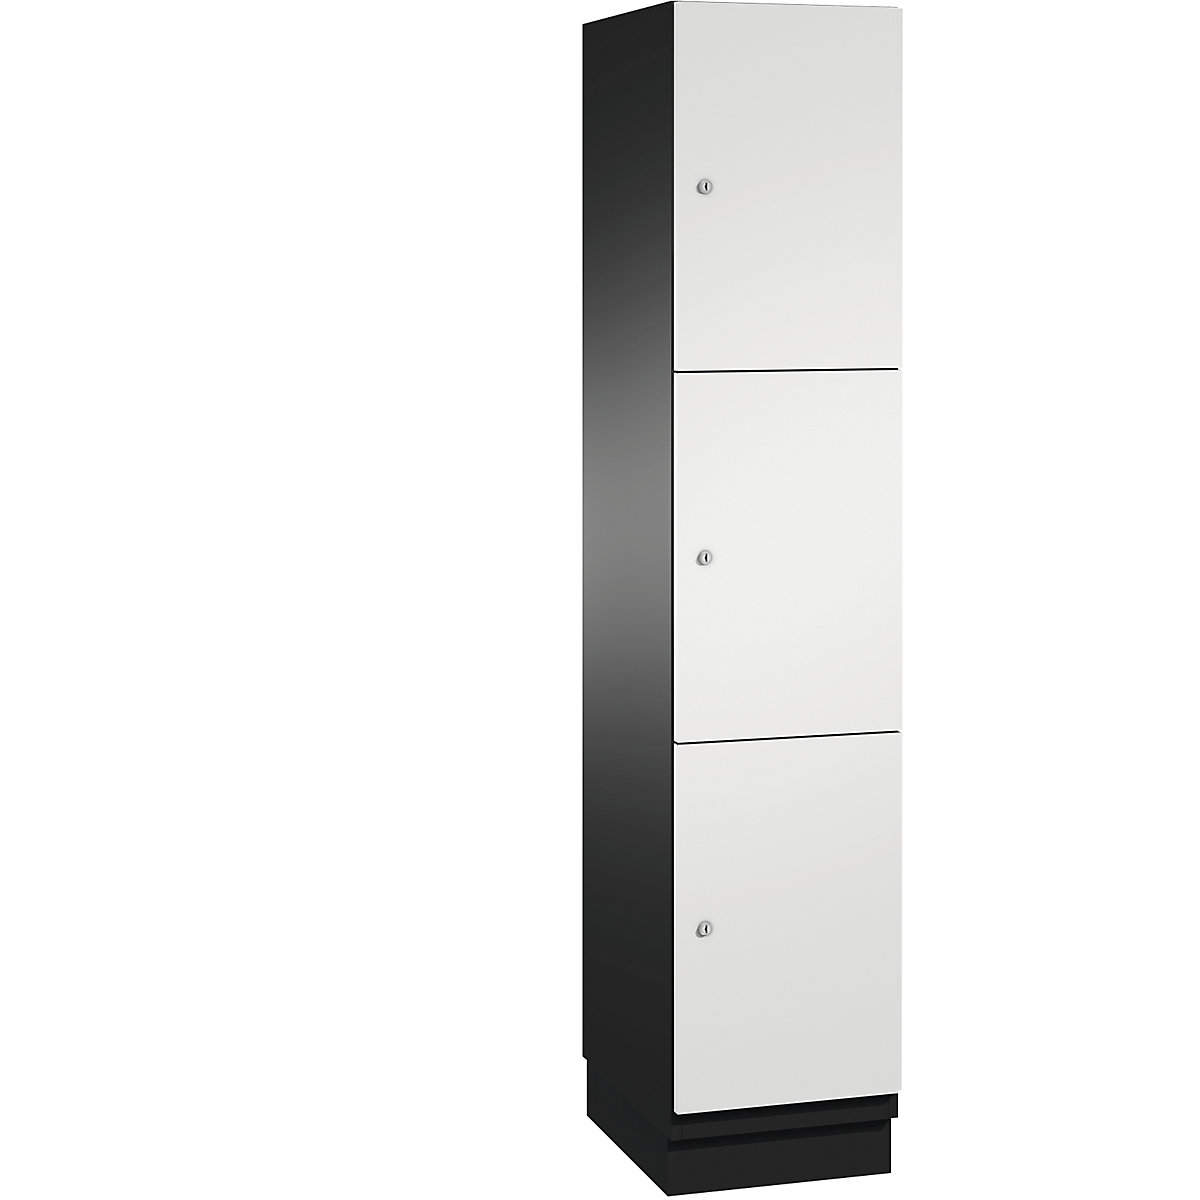 CAMBIO compartment locker with sheet steel doors – C+P, 3 compartments, width 400 mm, body black grey / door light grey-12